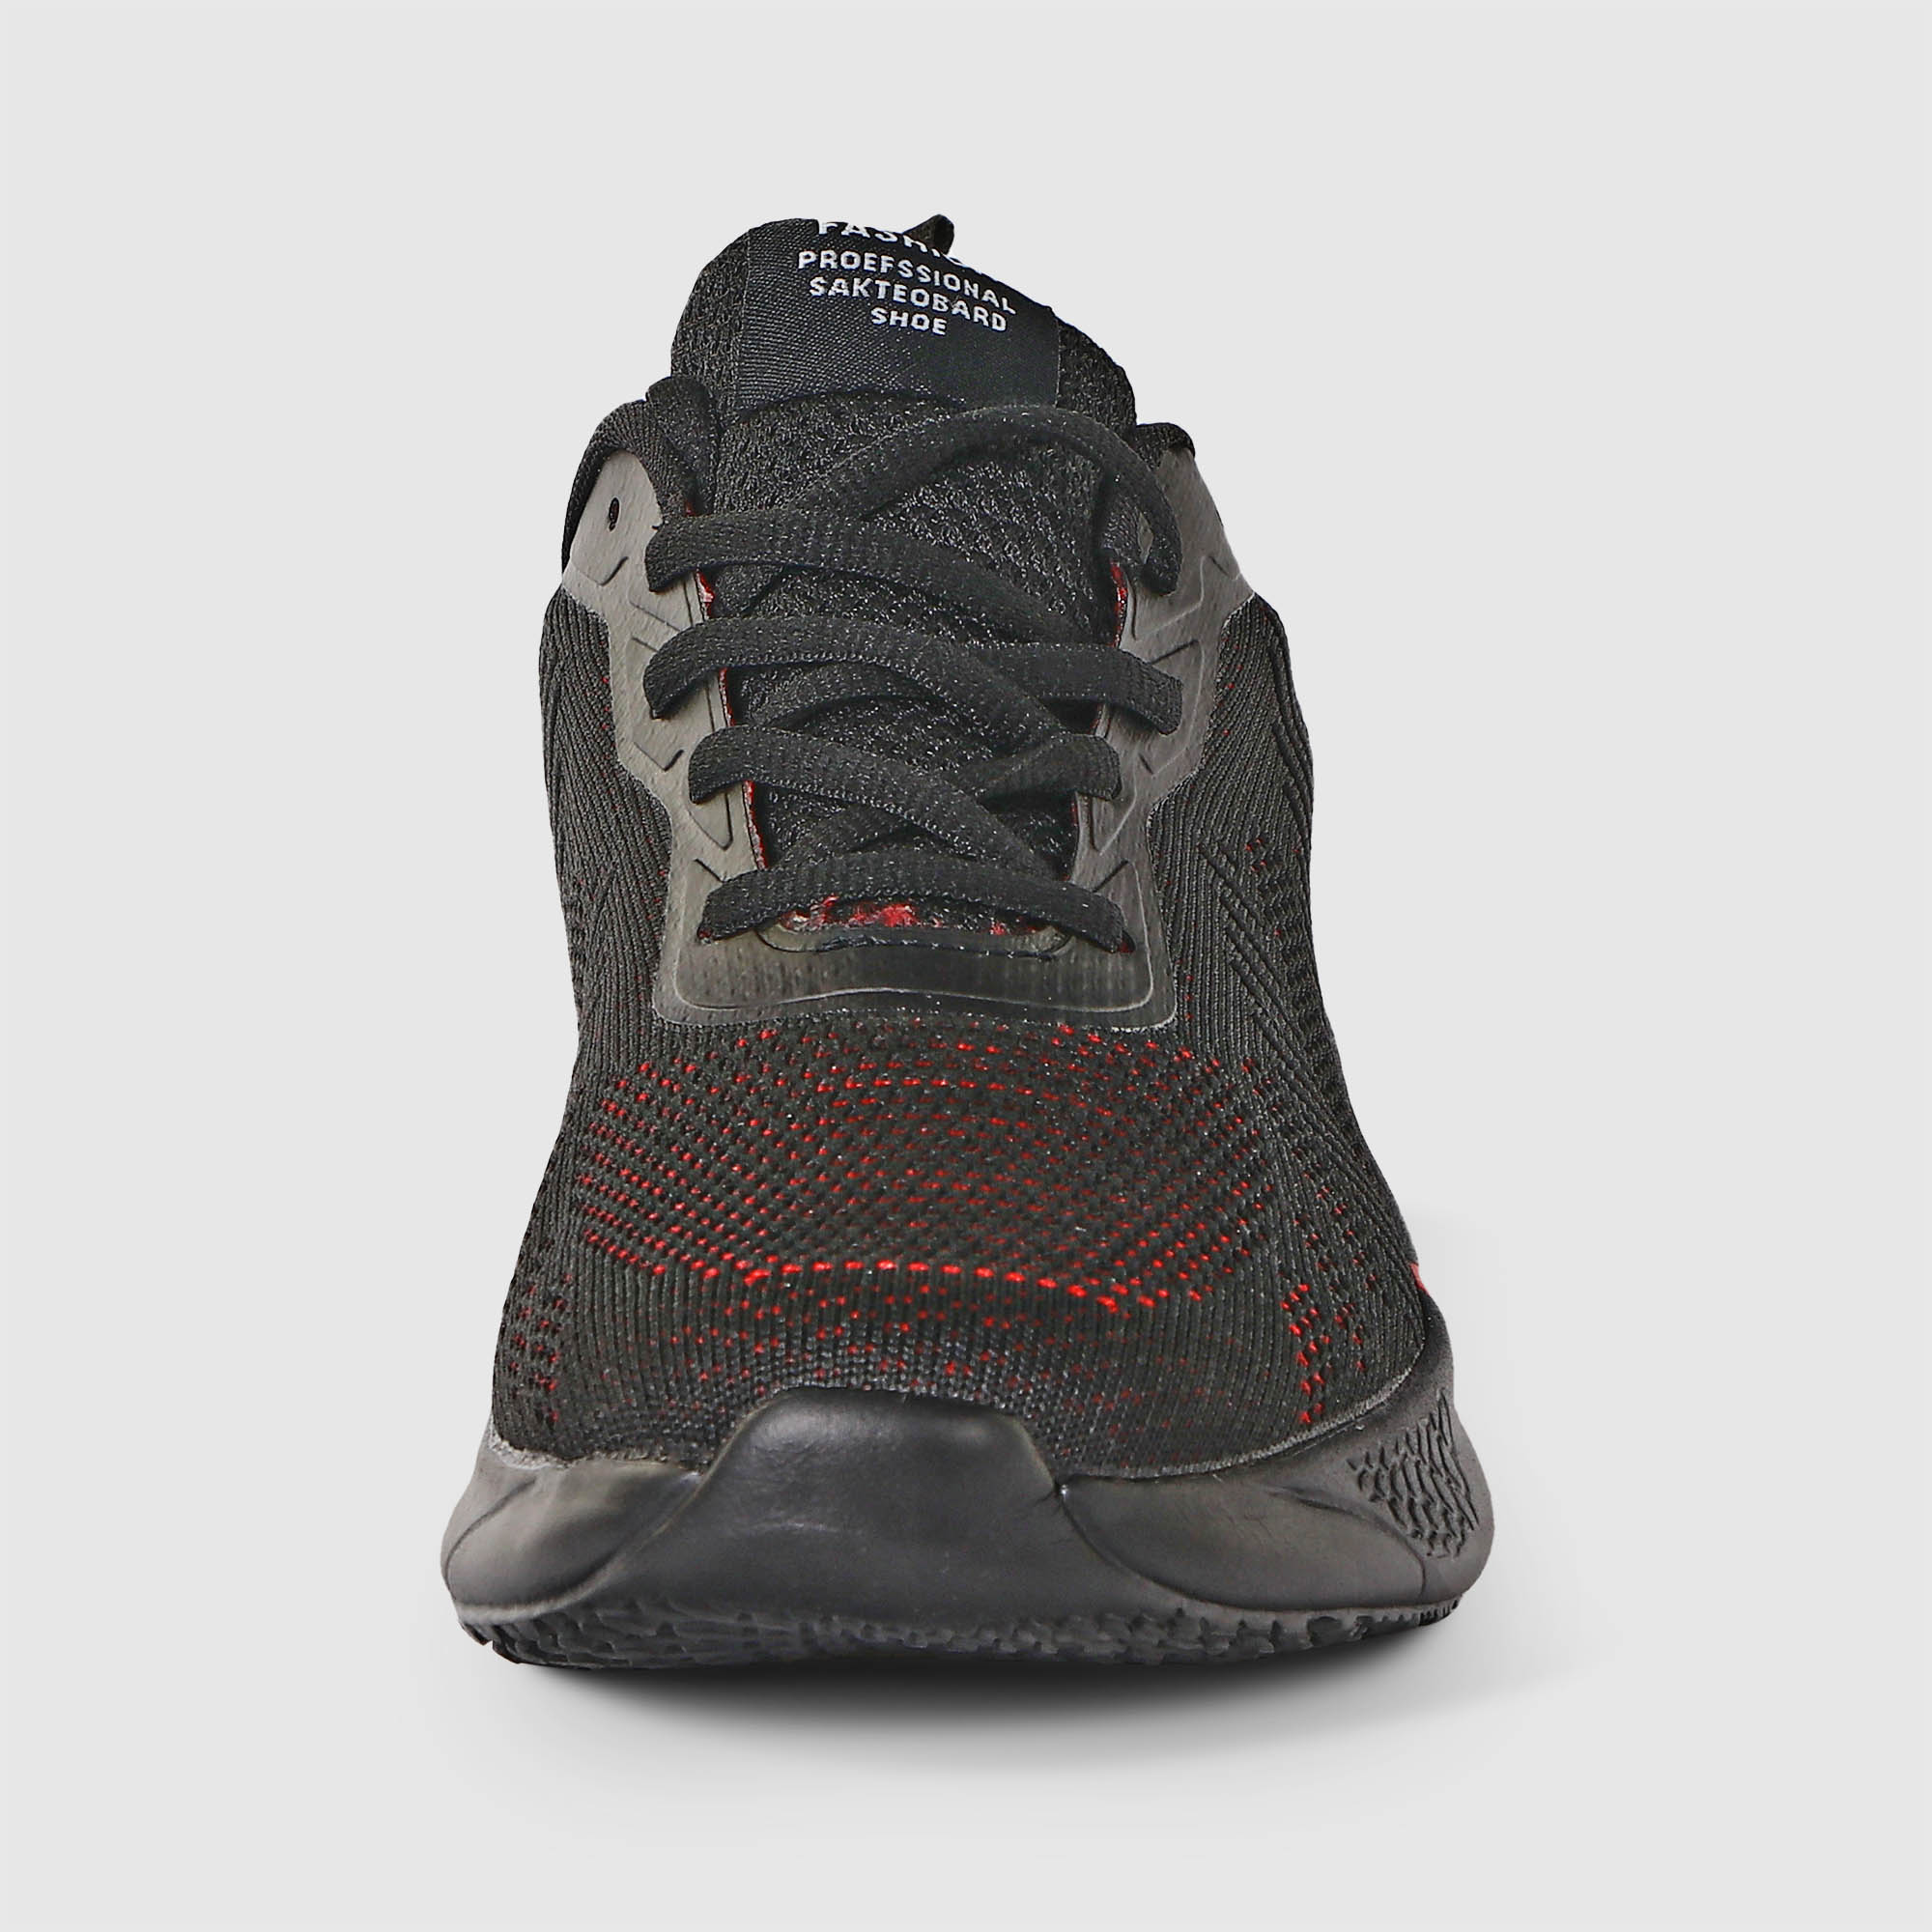 Мужские кроссовки TG Global Красные с чёрным (GT-804), цвет красный, размер 42 - фото 4